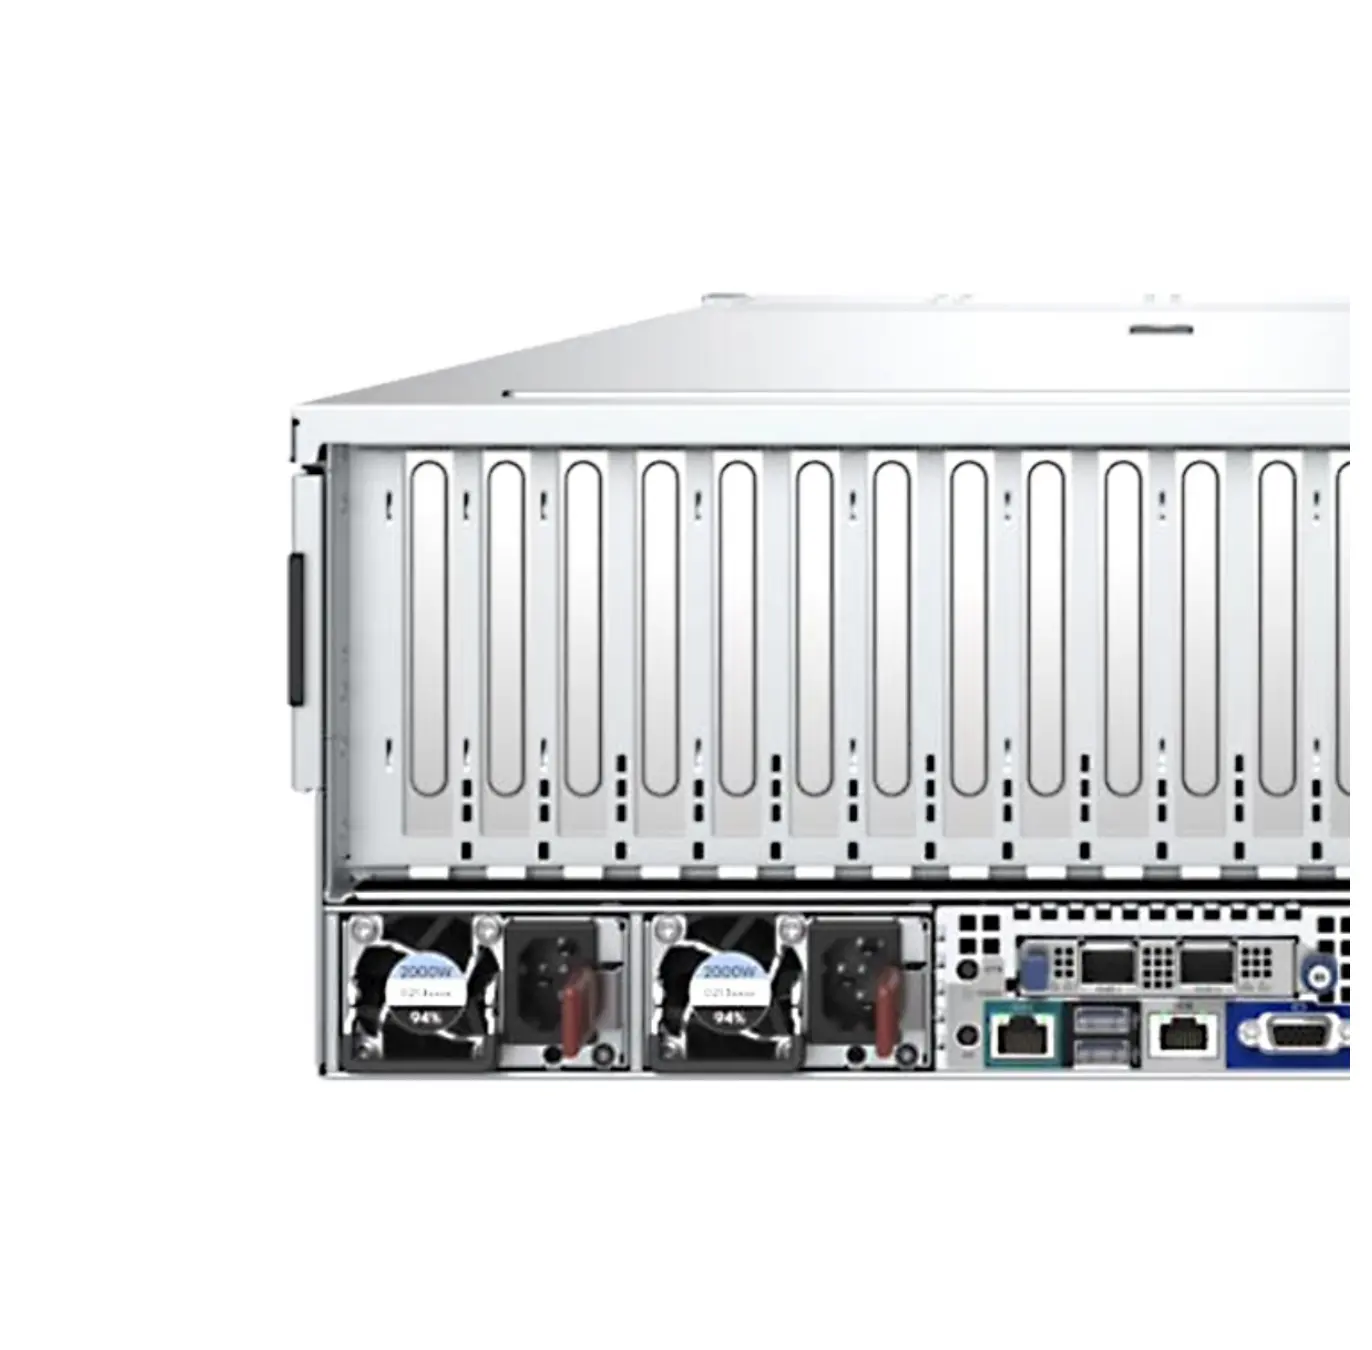 최신 H3C UniServer R5300 G5 4U 랙 서버 GPU 서버 R5300G5 WINDOW 2009 서버